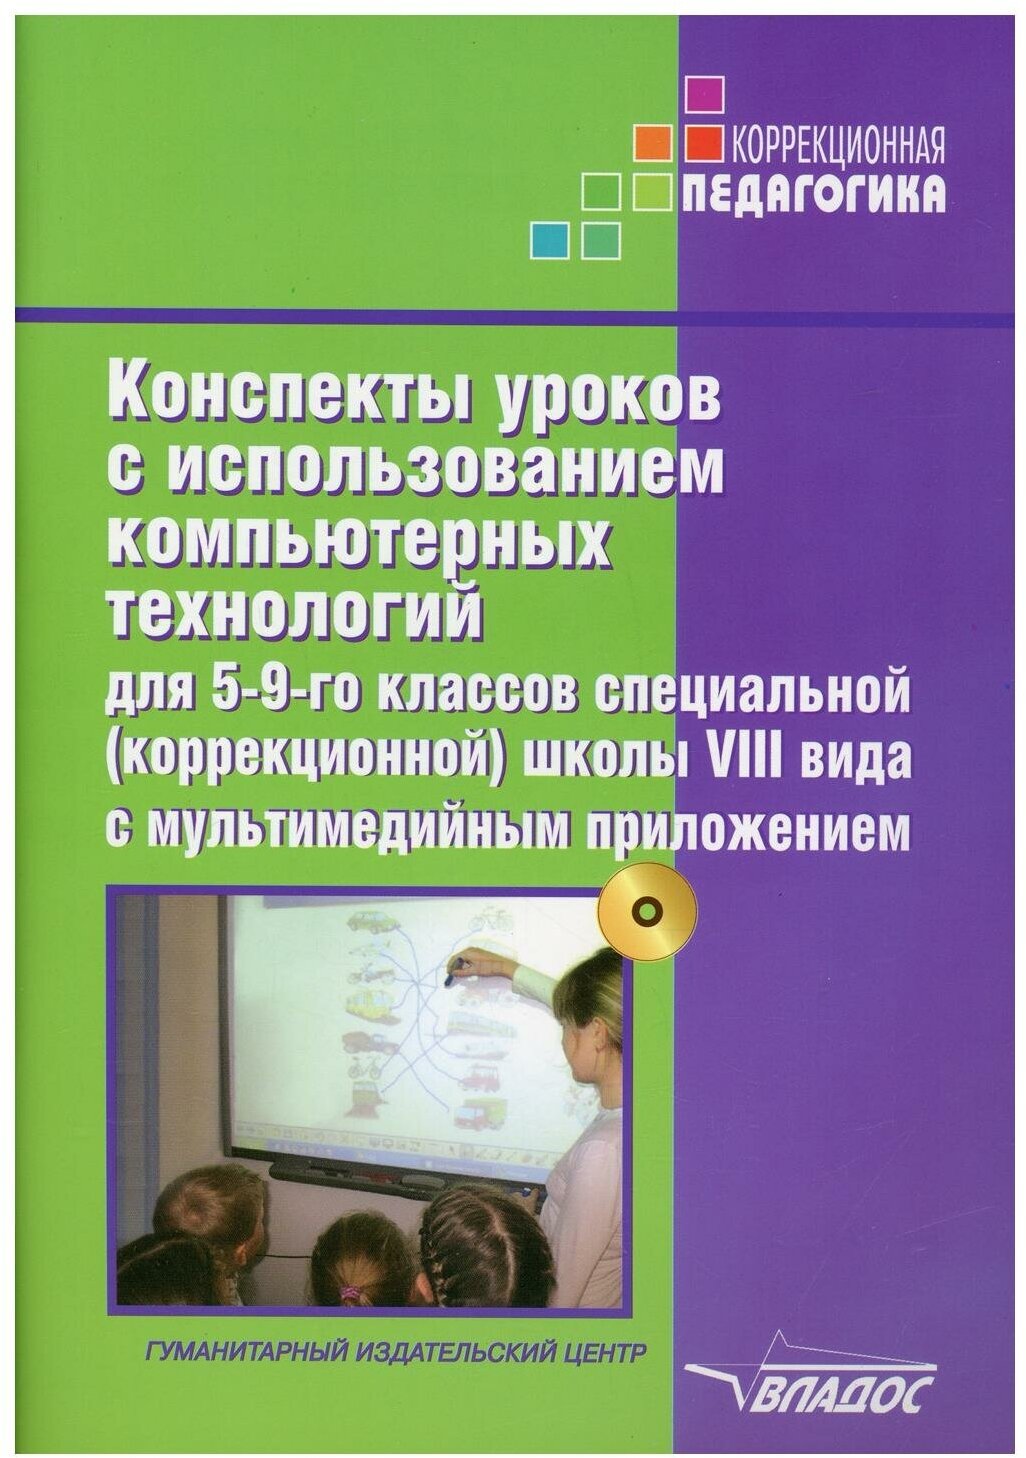 Конспекты уроков с использованием компьютерных технологий для 5-9 классов специальной(коррекционной) школы VIII вида + CD Методика Роготнева АВ